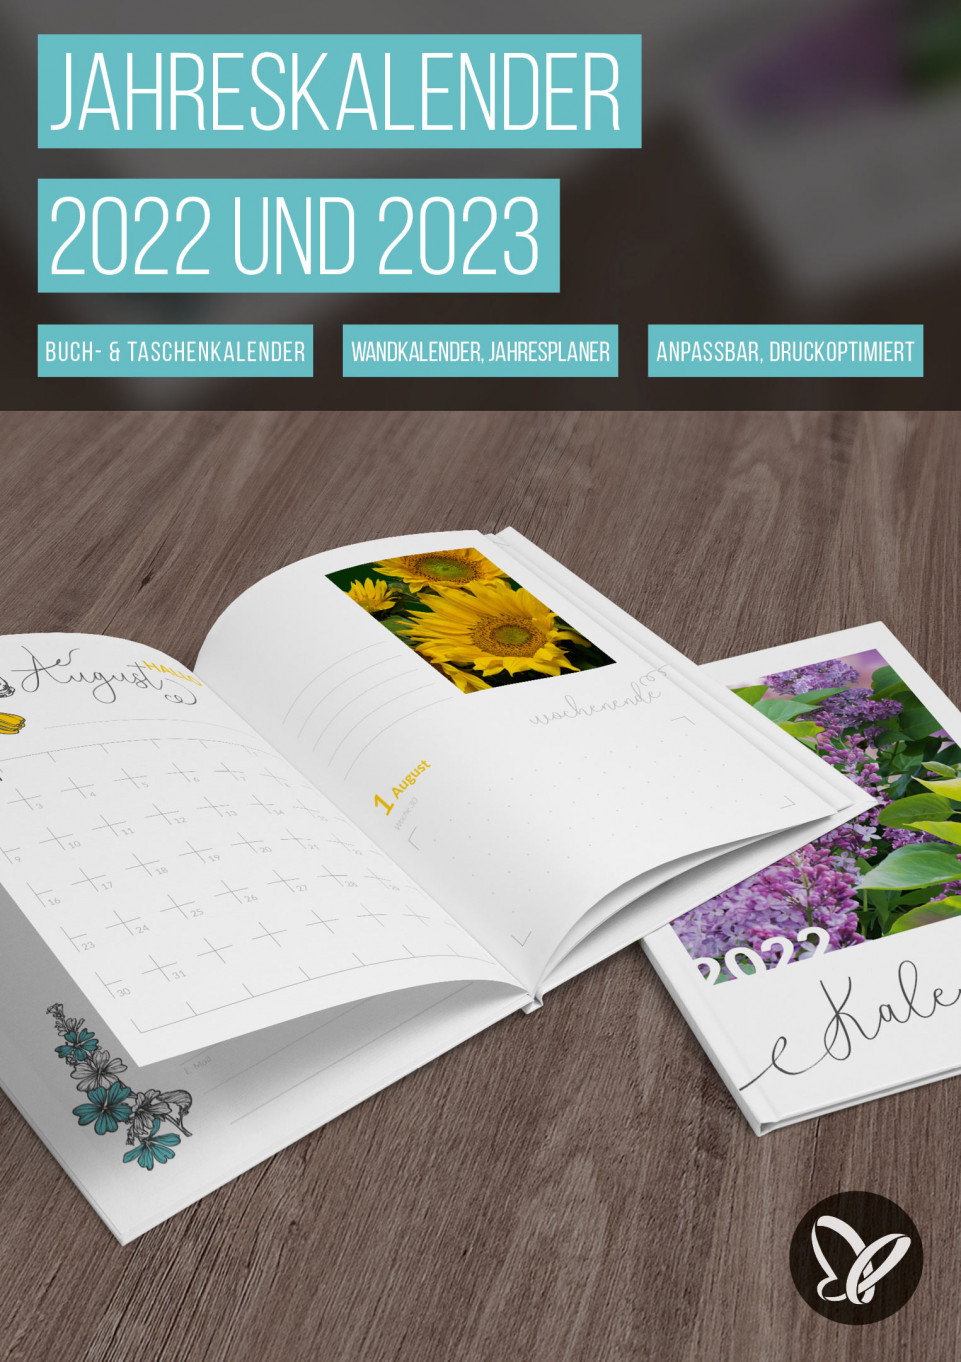 Jahreskalender 2022 und 2023 zum Ausdrucken